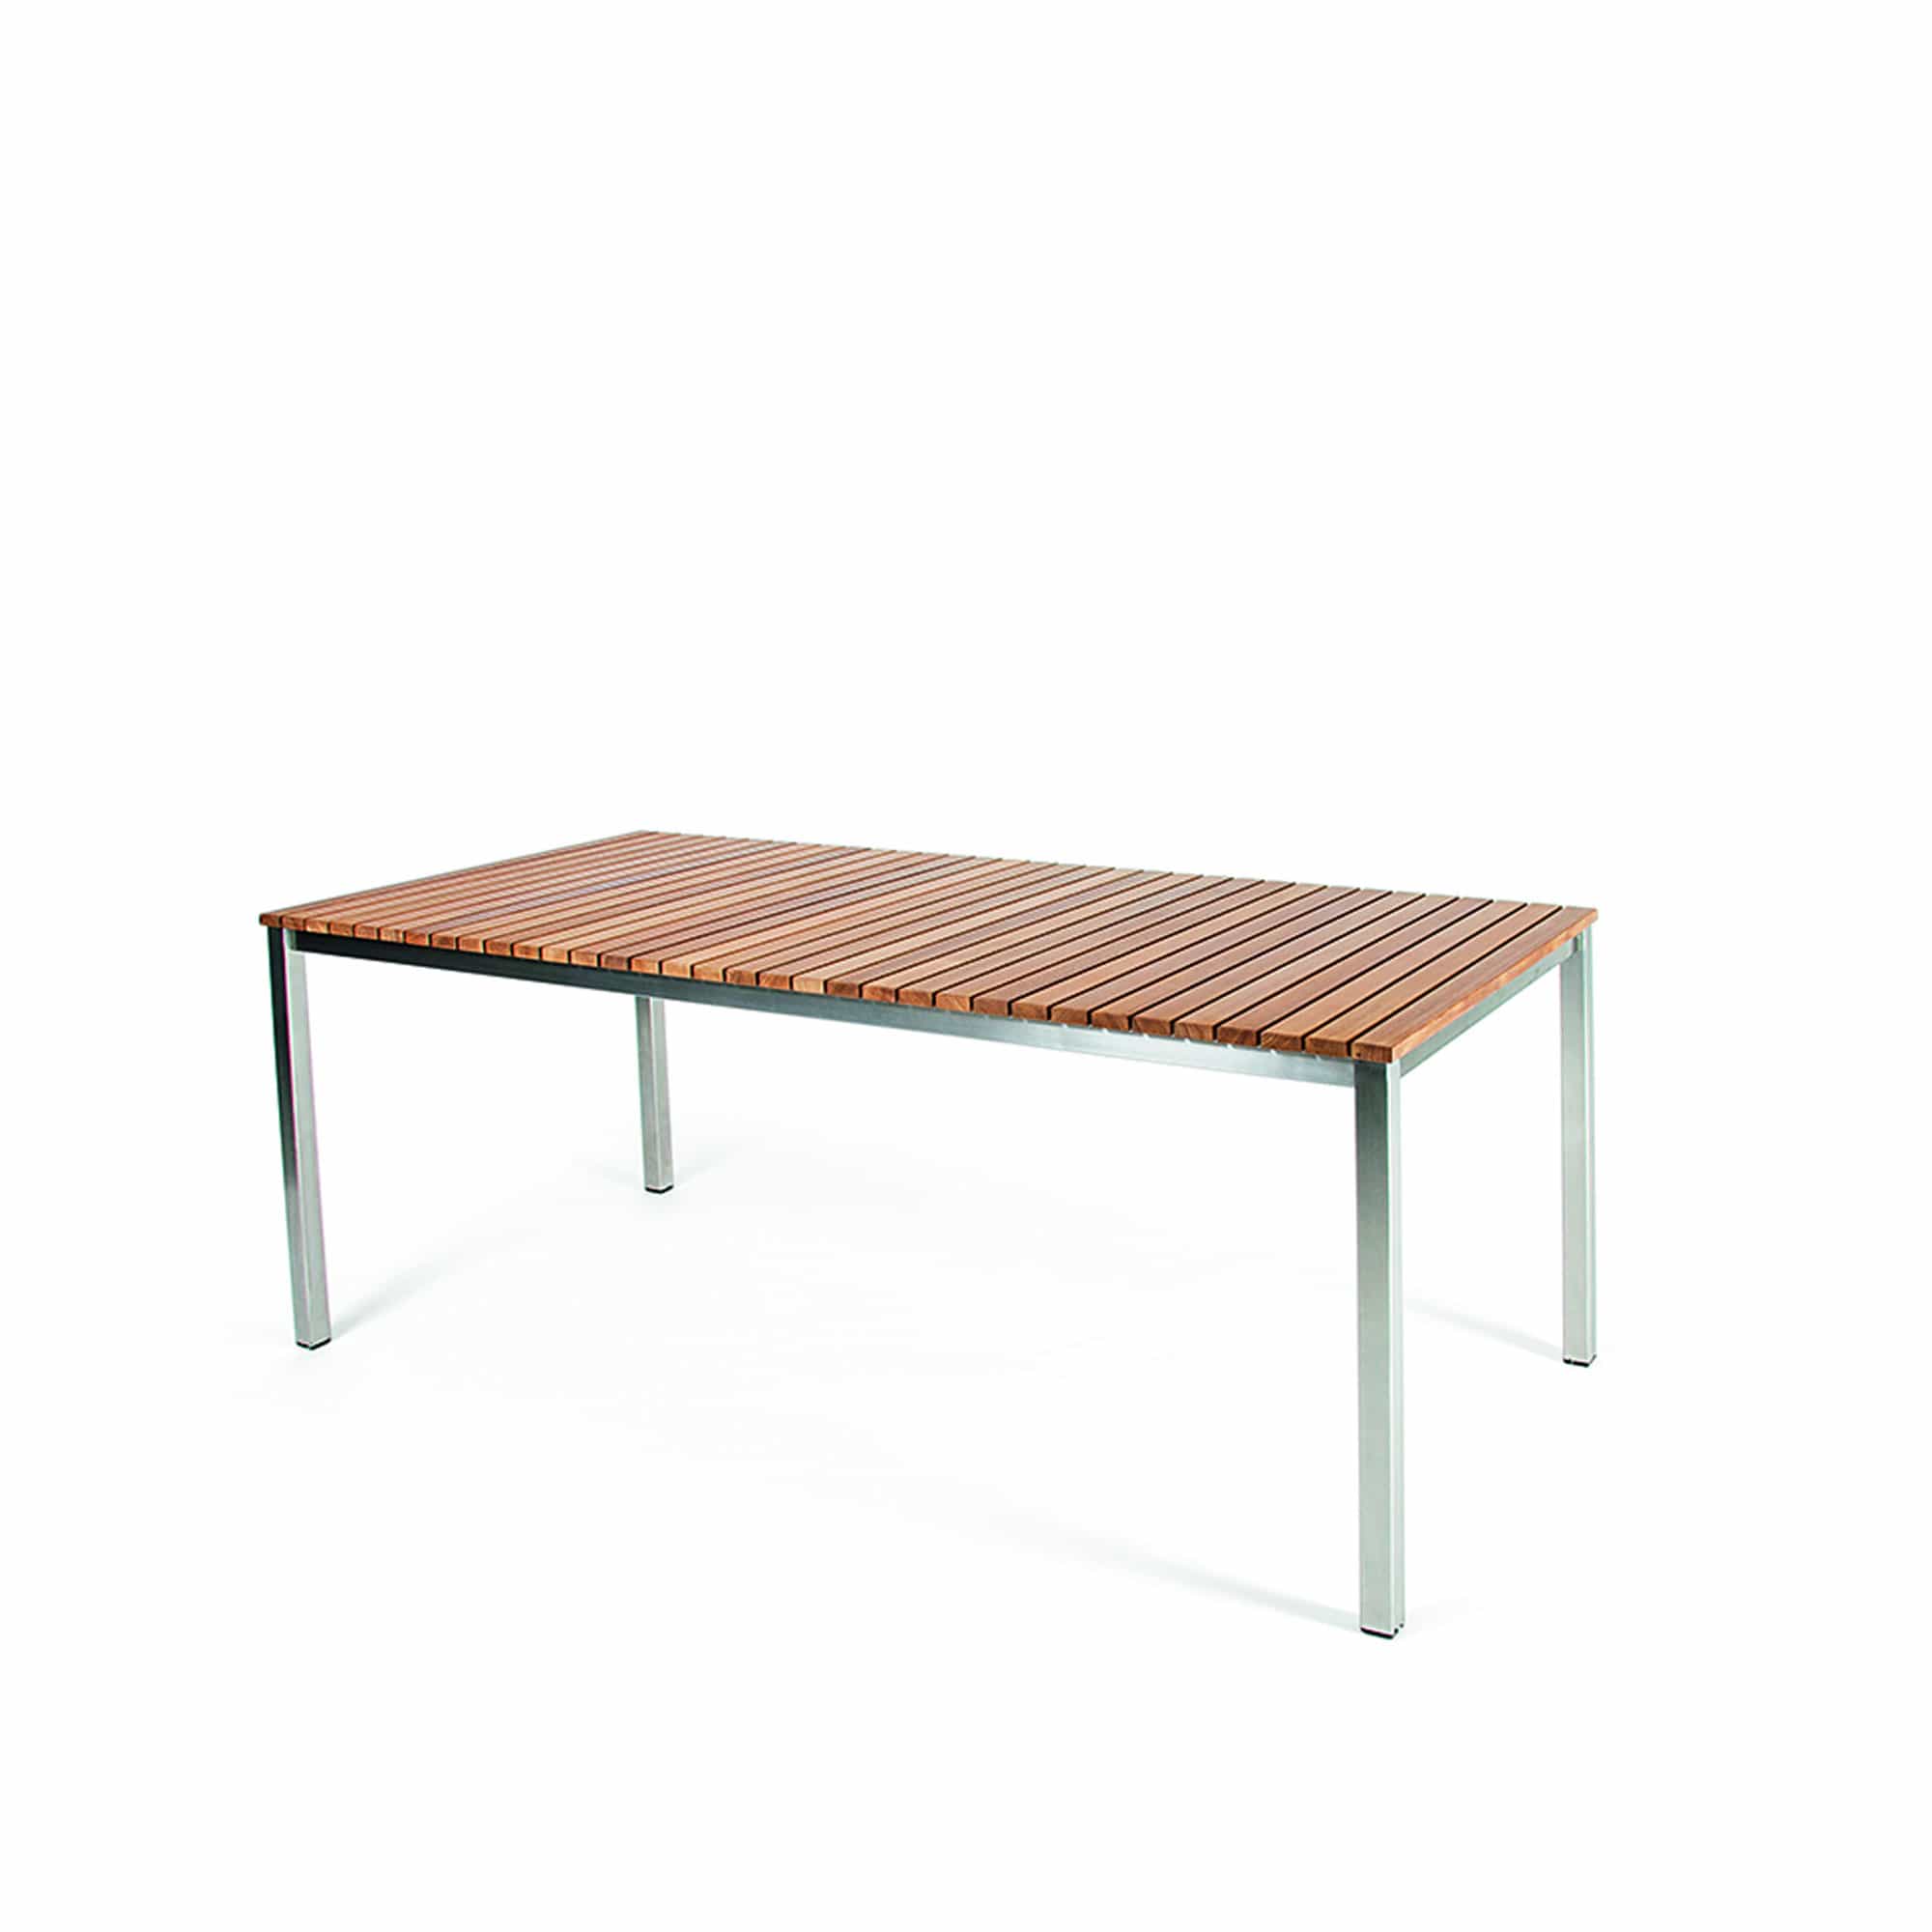 Häringe Table Medium - Teak/Brushed Stainless Steel